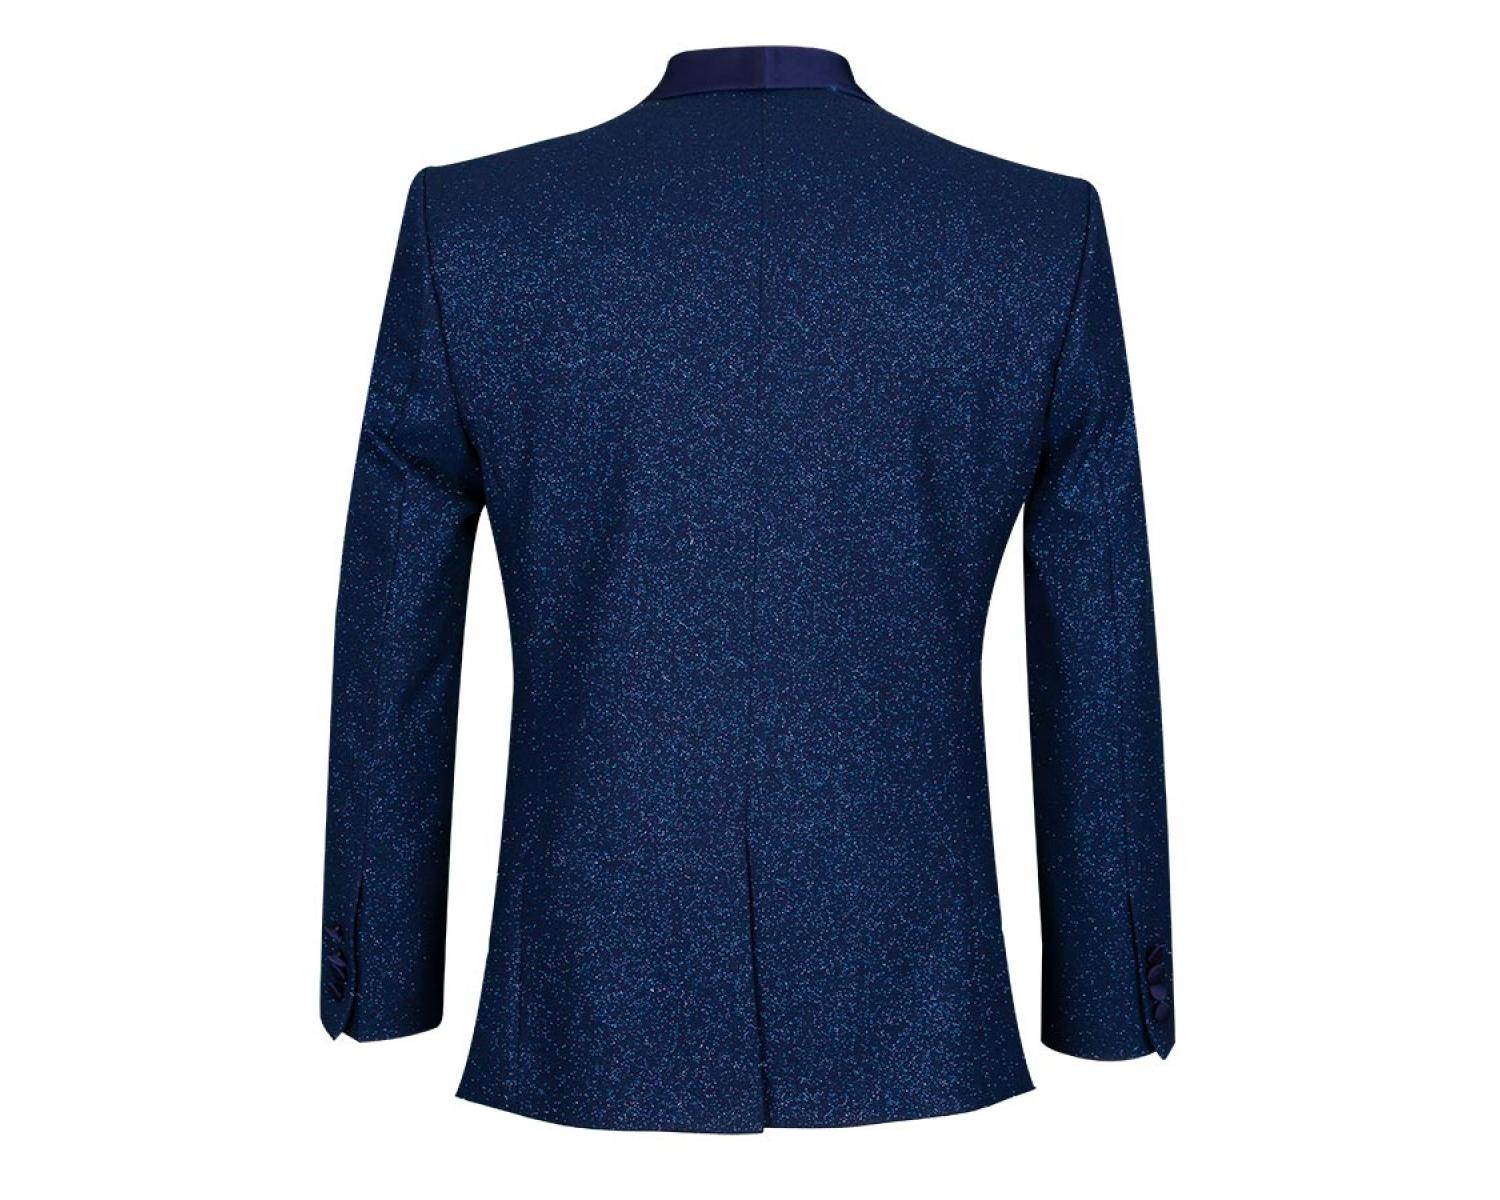 J 227 Men's dark blue shiny smoking jacket with bow tie - Quality ...